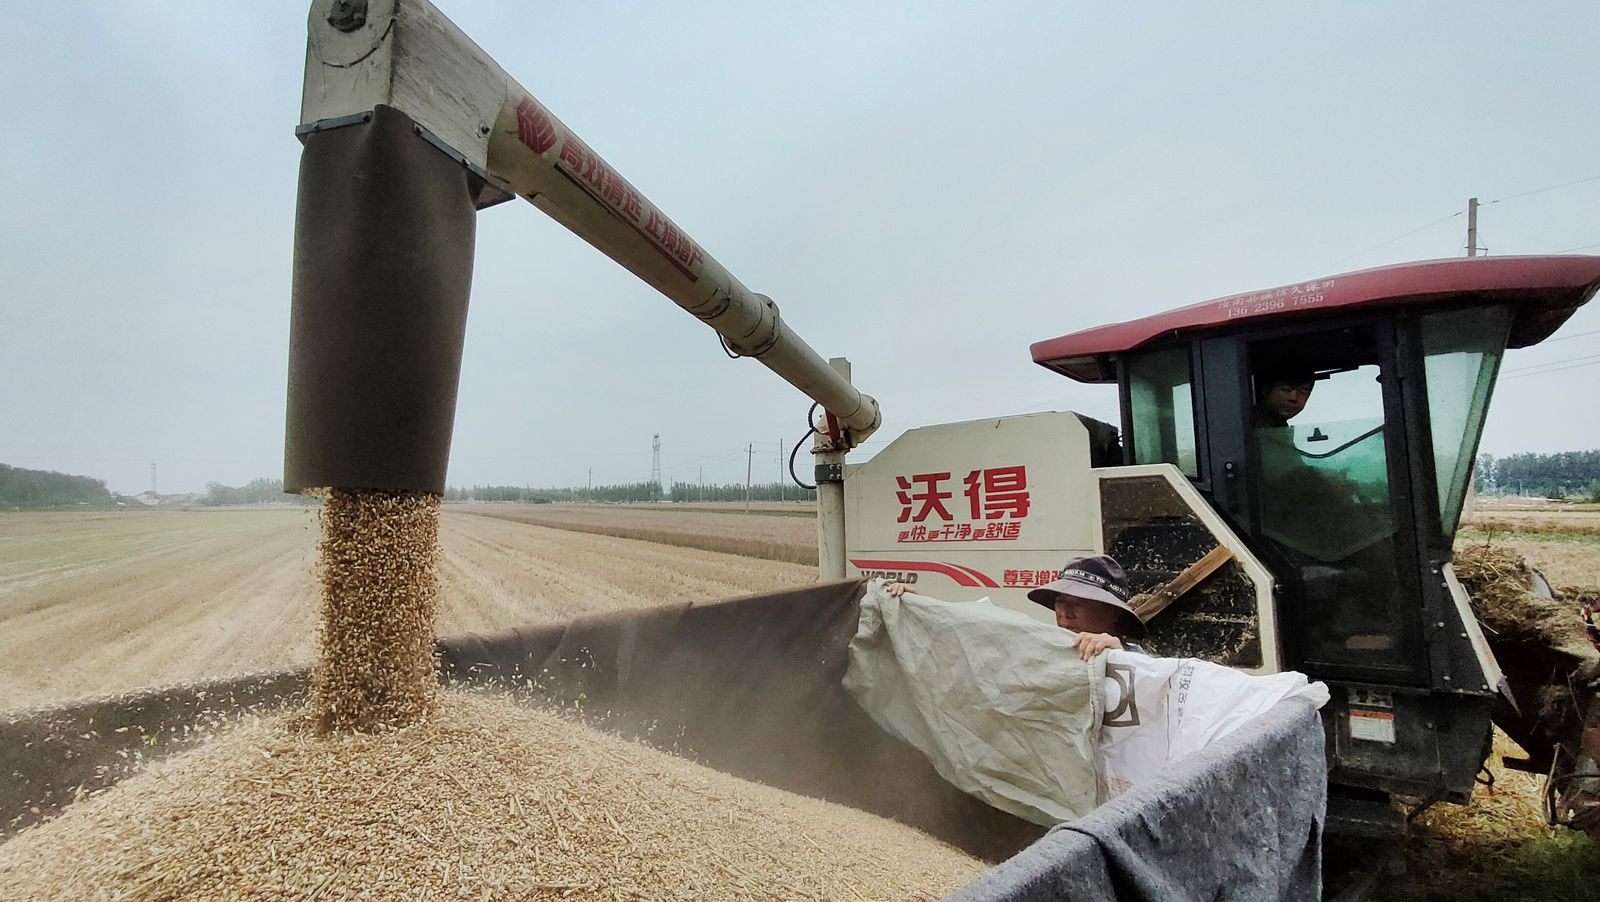 الأمطار الغزيرة تحاصر محصول القمح في الصين